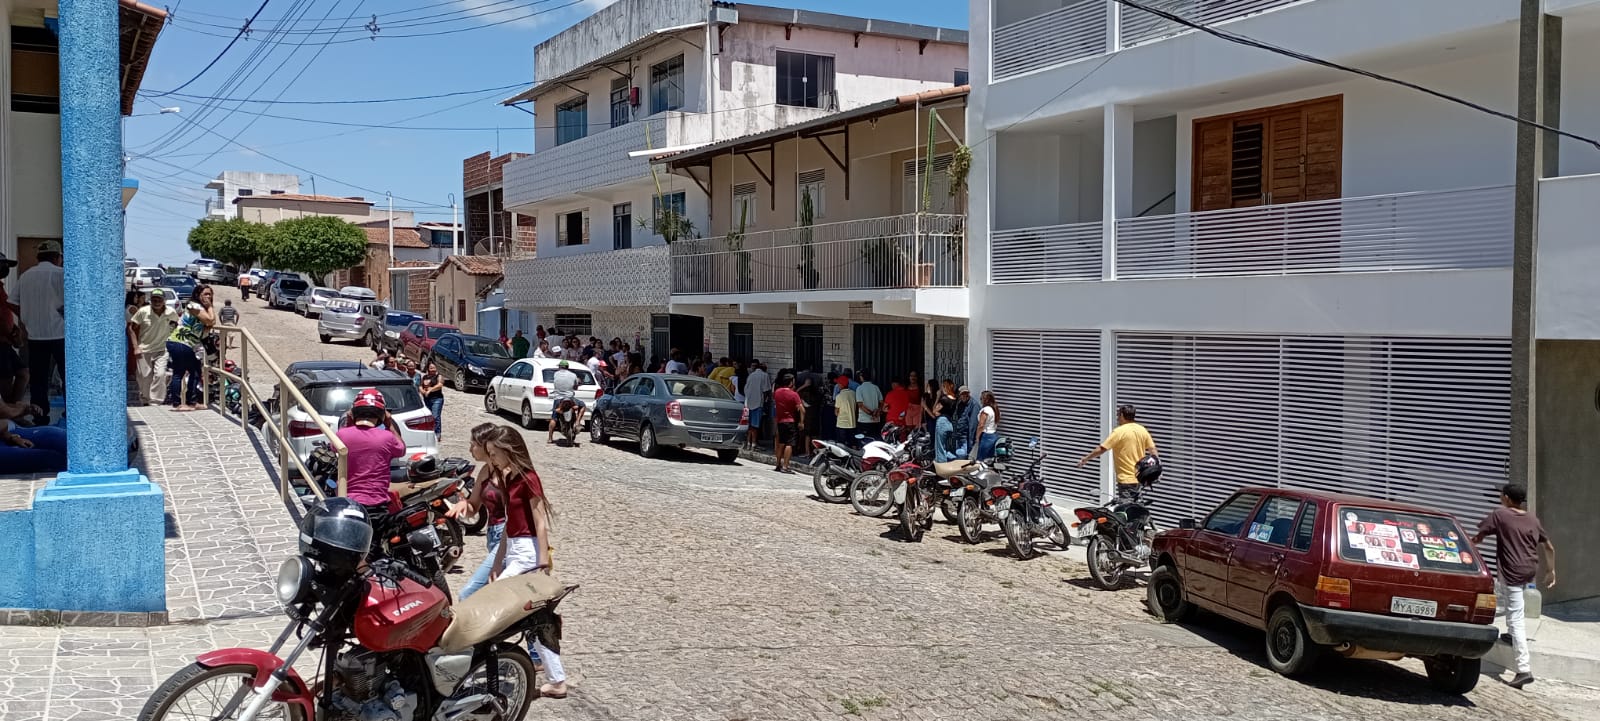 Acessibilidade e biometria são problemas na votação em Cerro Corá